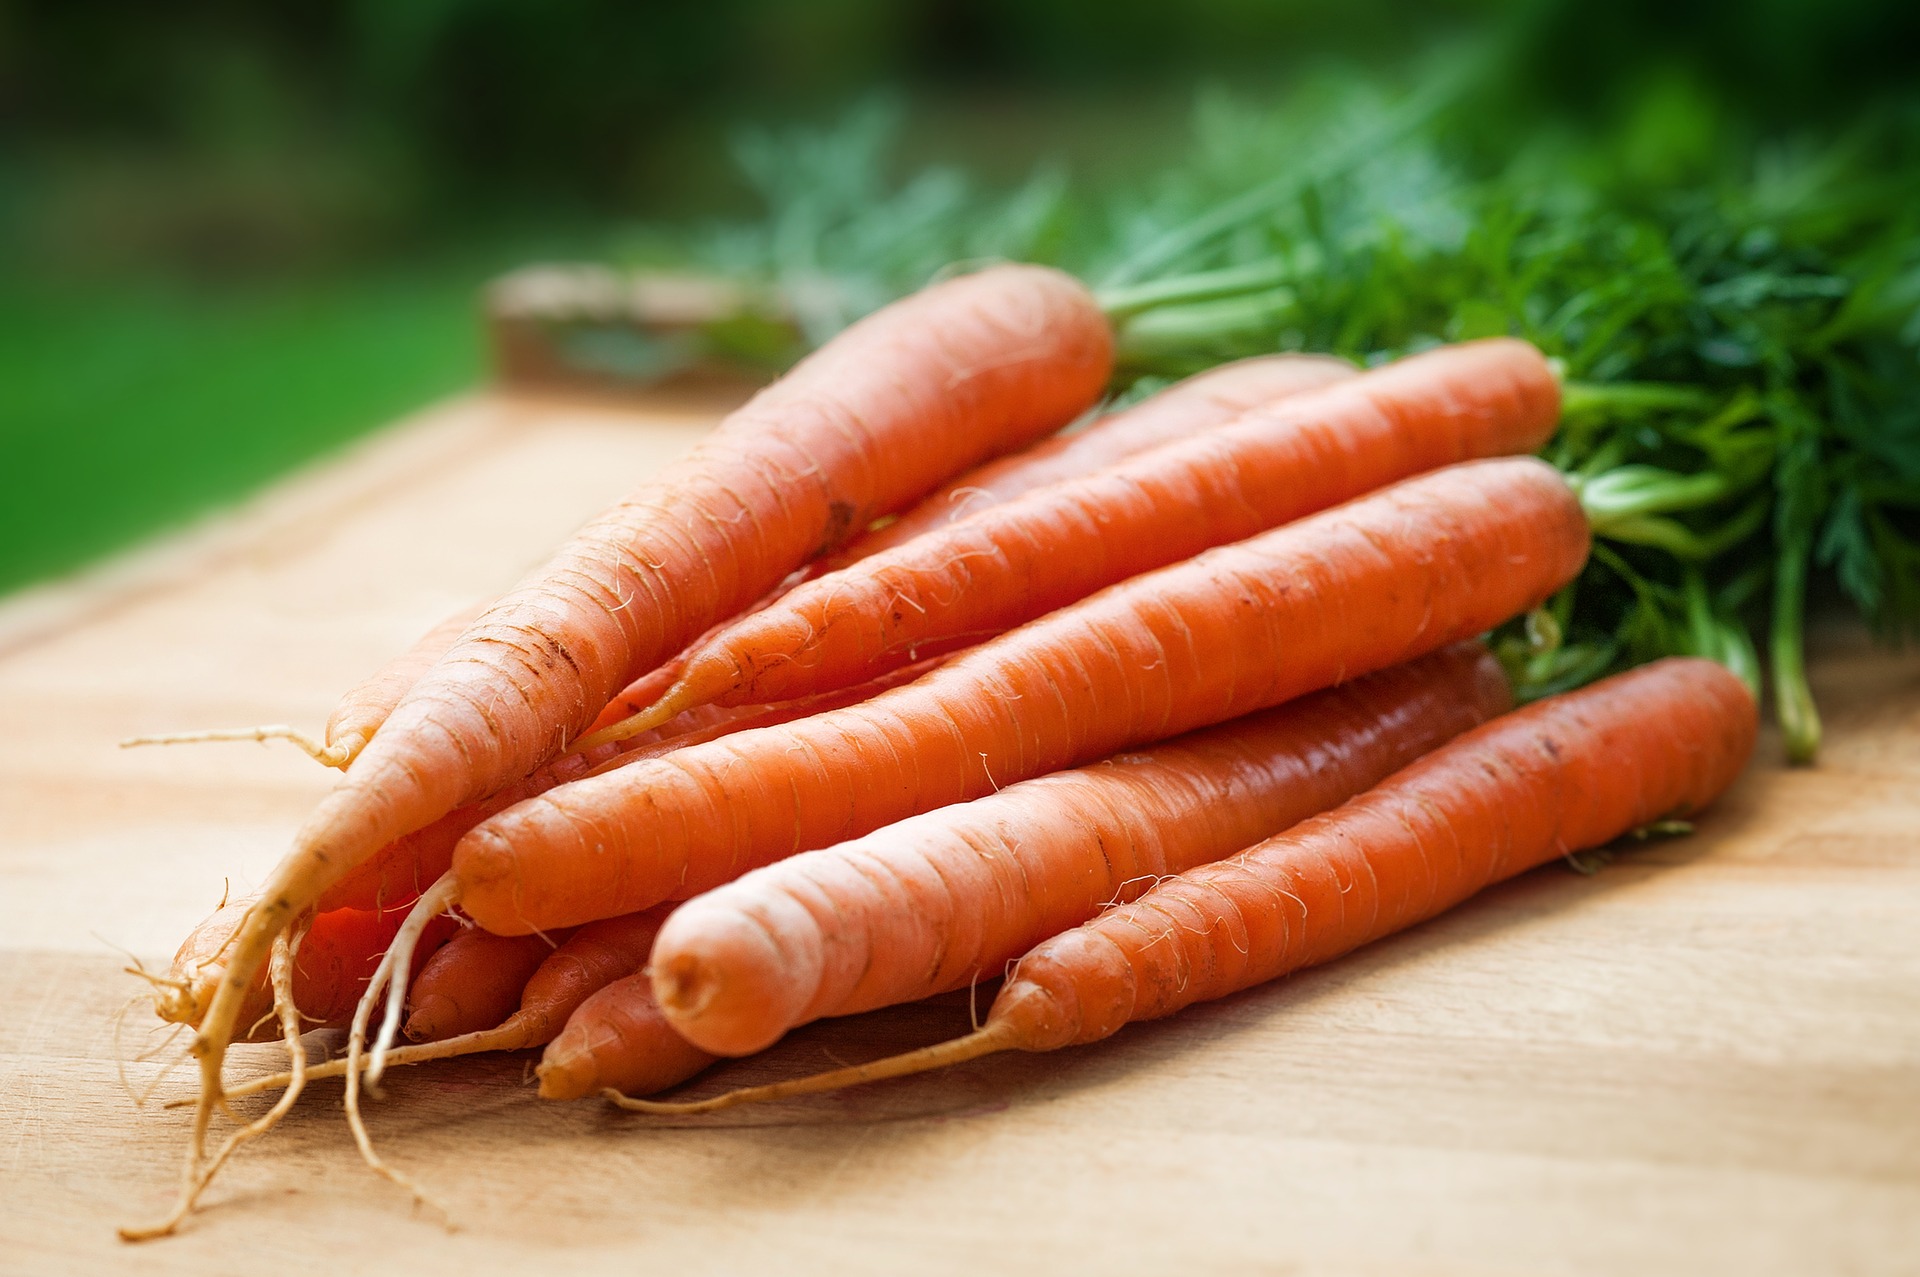 La carota, una delle verdure più comuni negli orti casalinghi